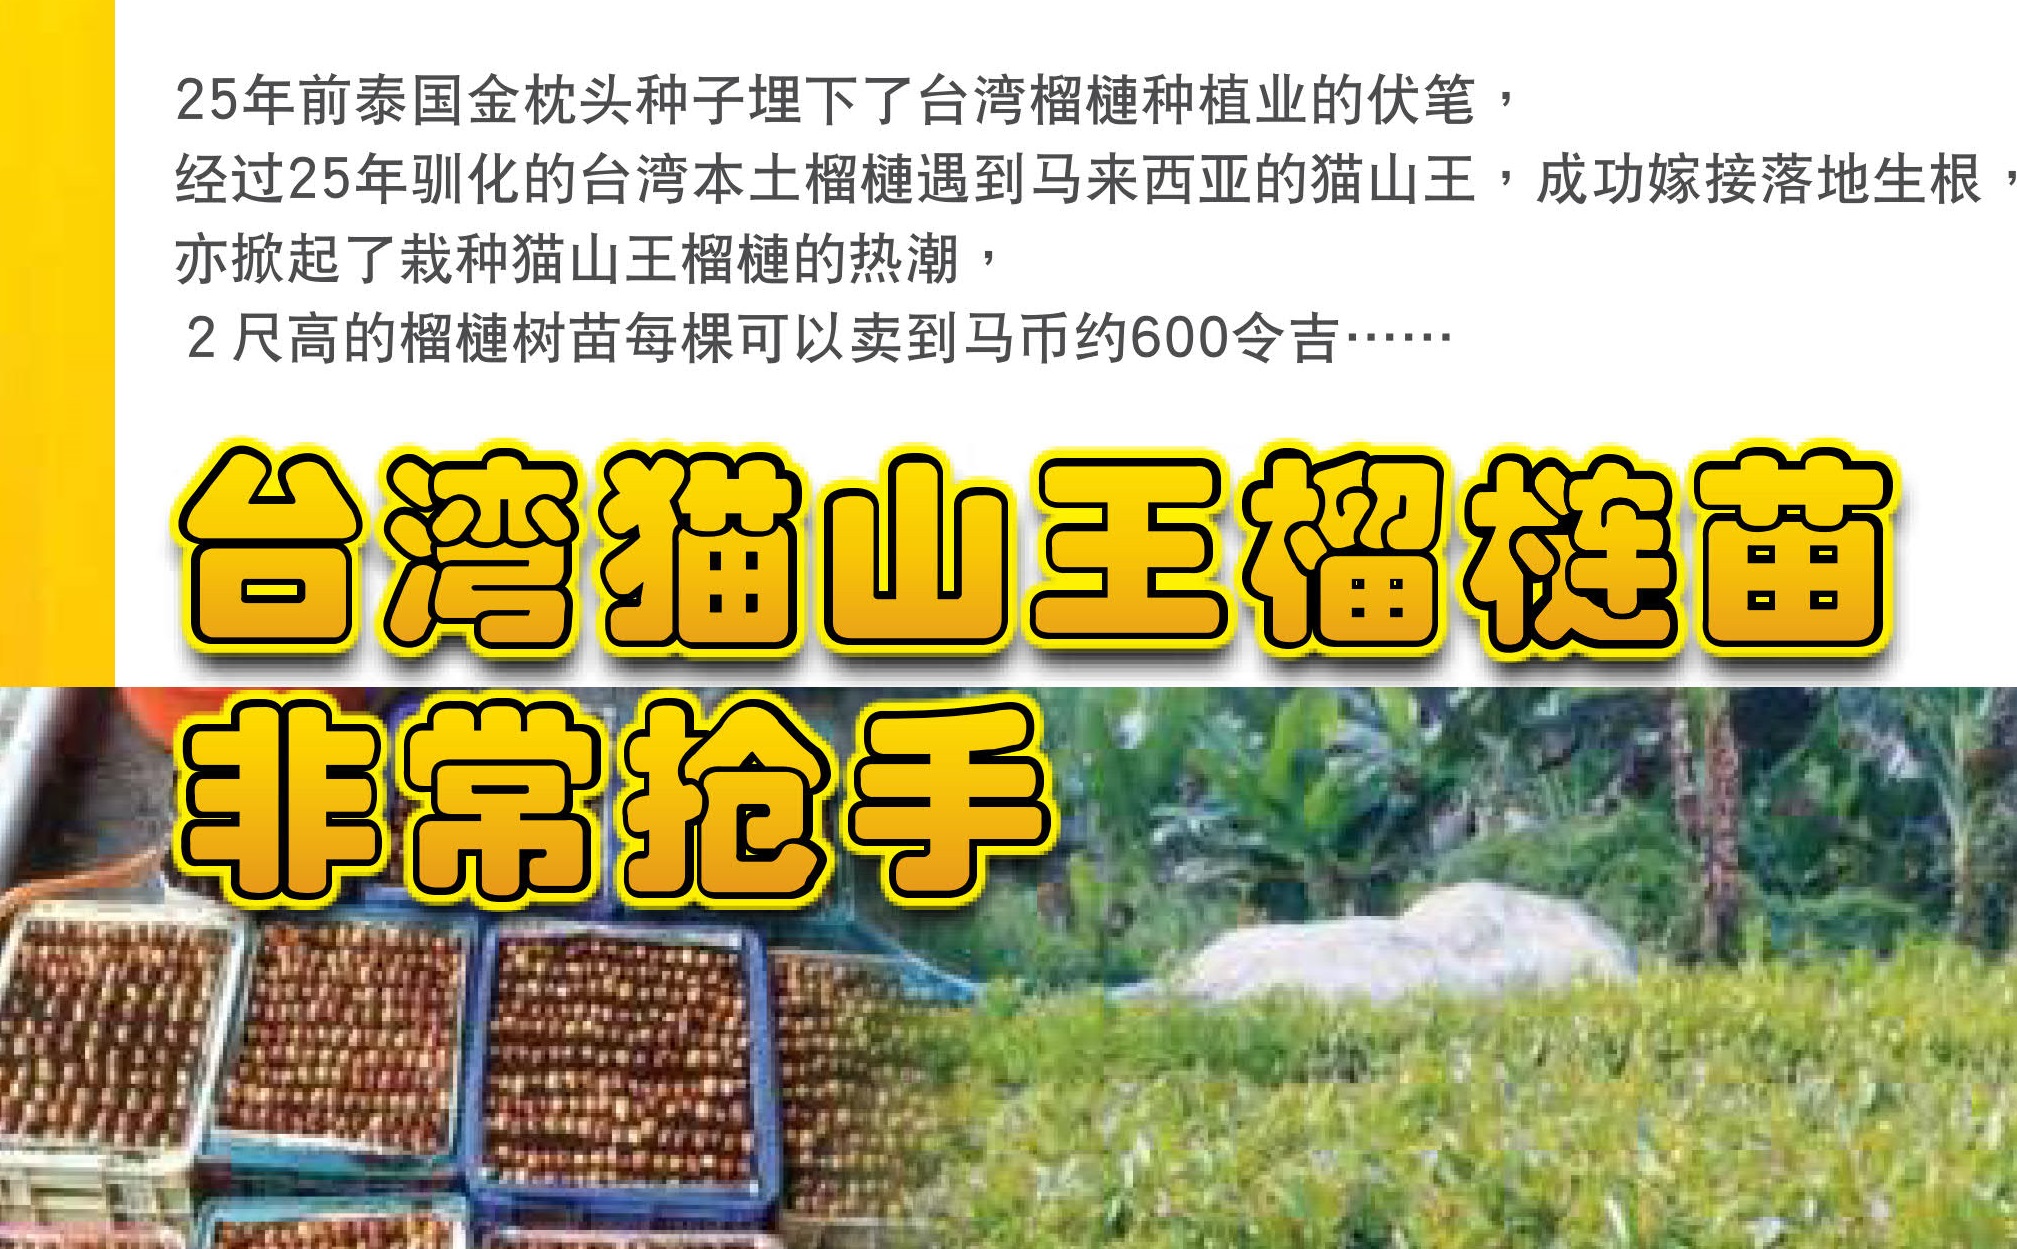 台湾猫山王榴梿苗非常抢手 - 农牧世界